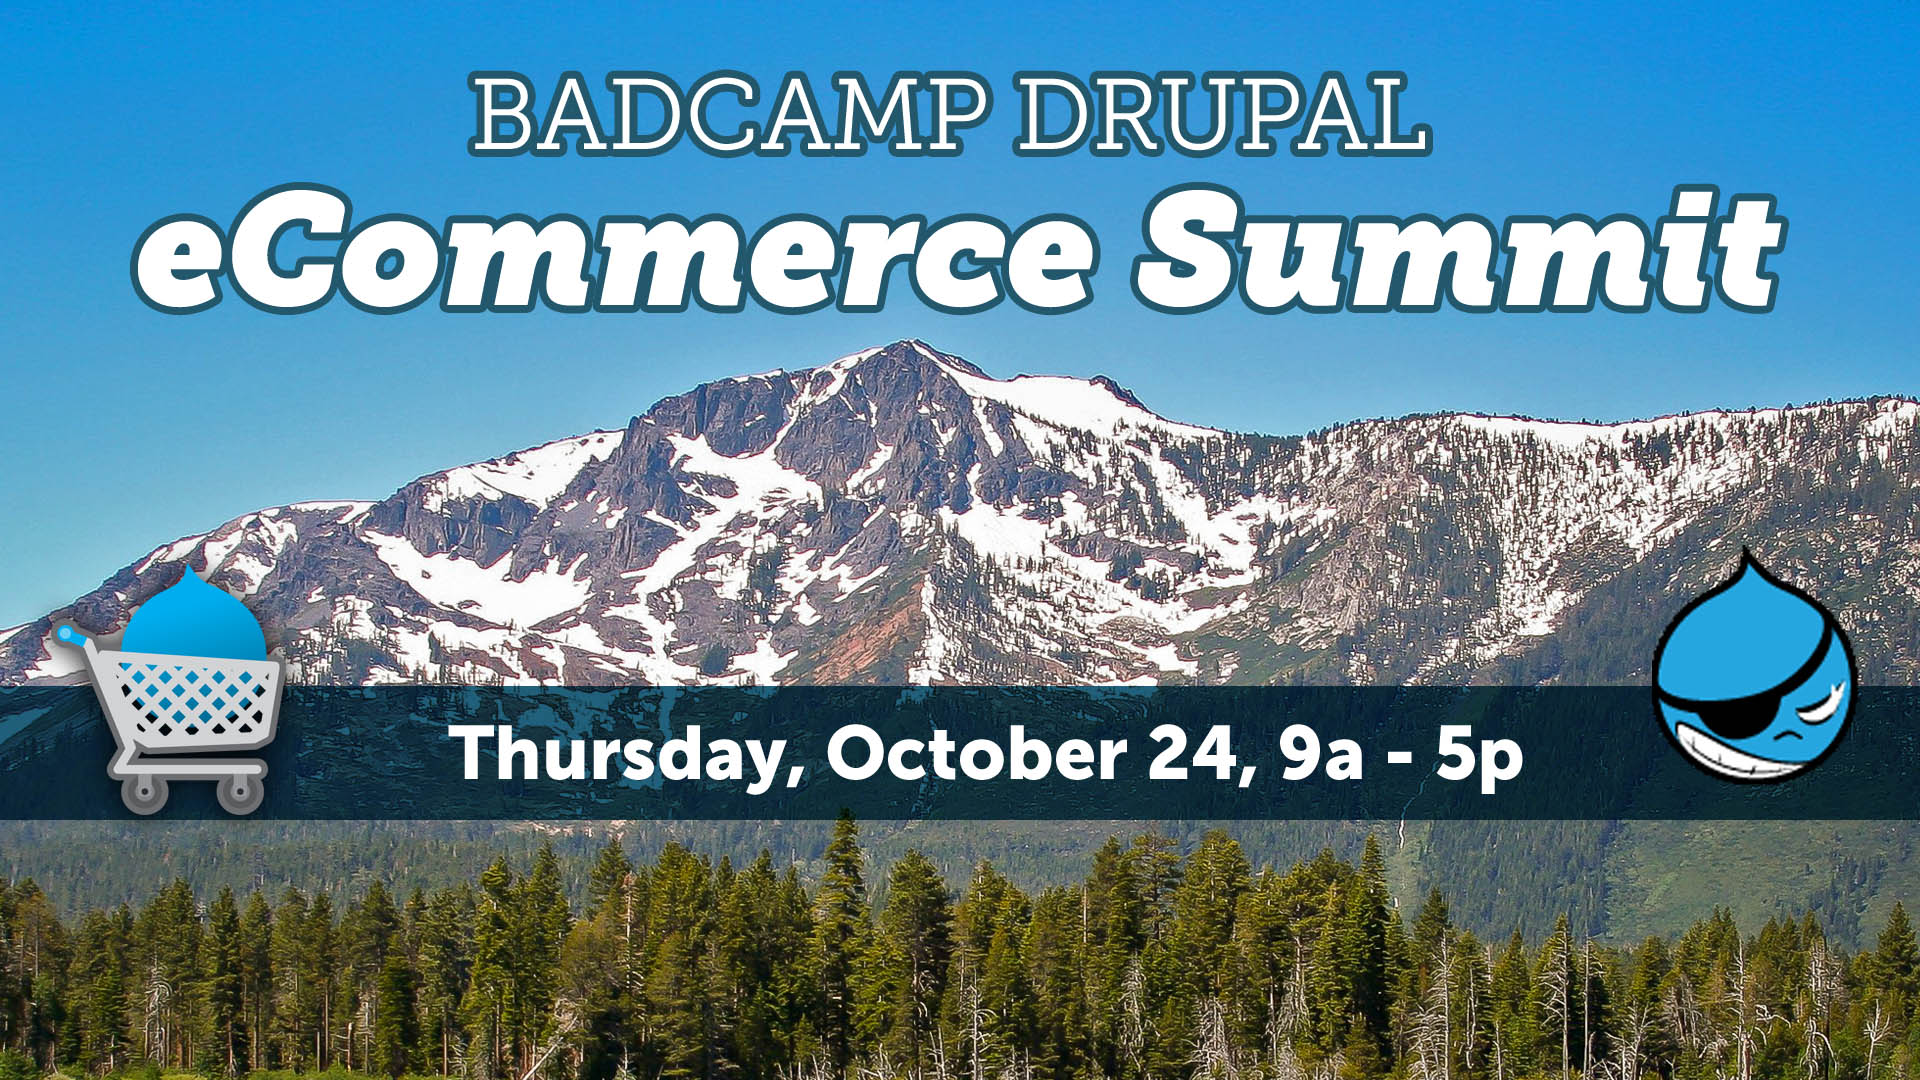 BADCamp Drupal eCommerce Summit